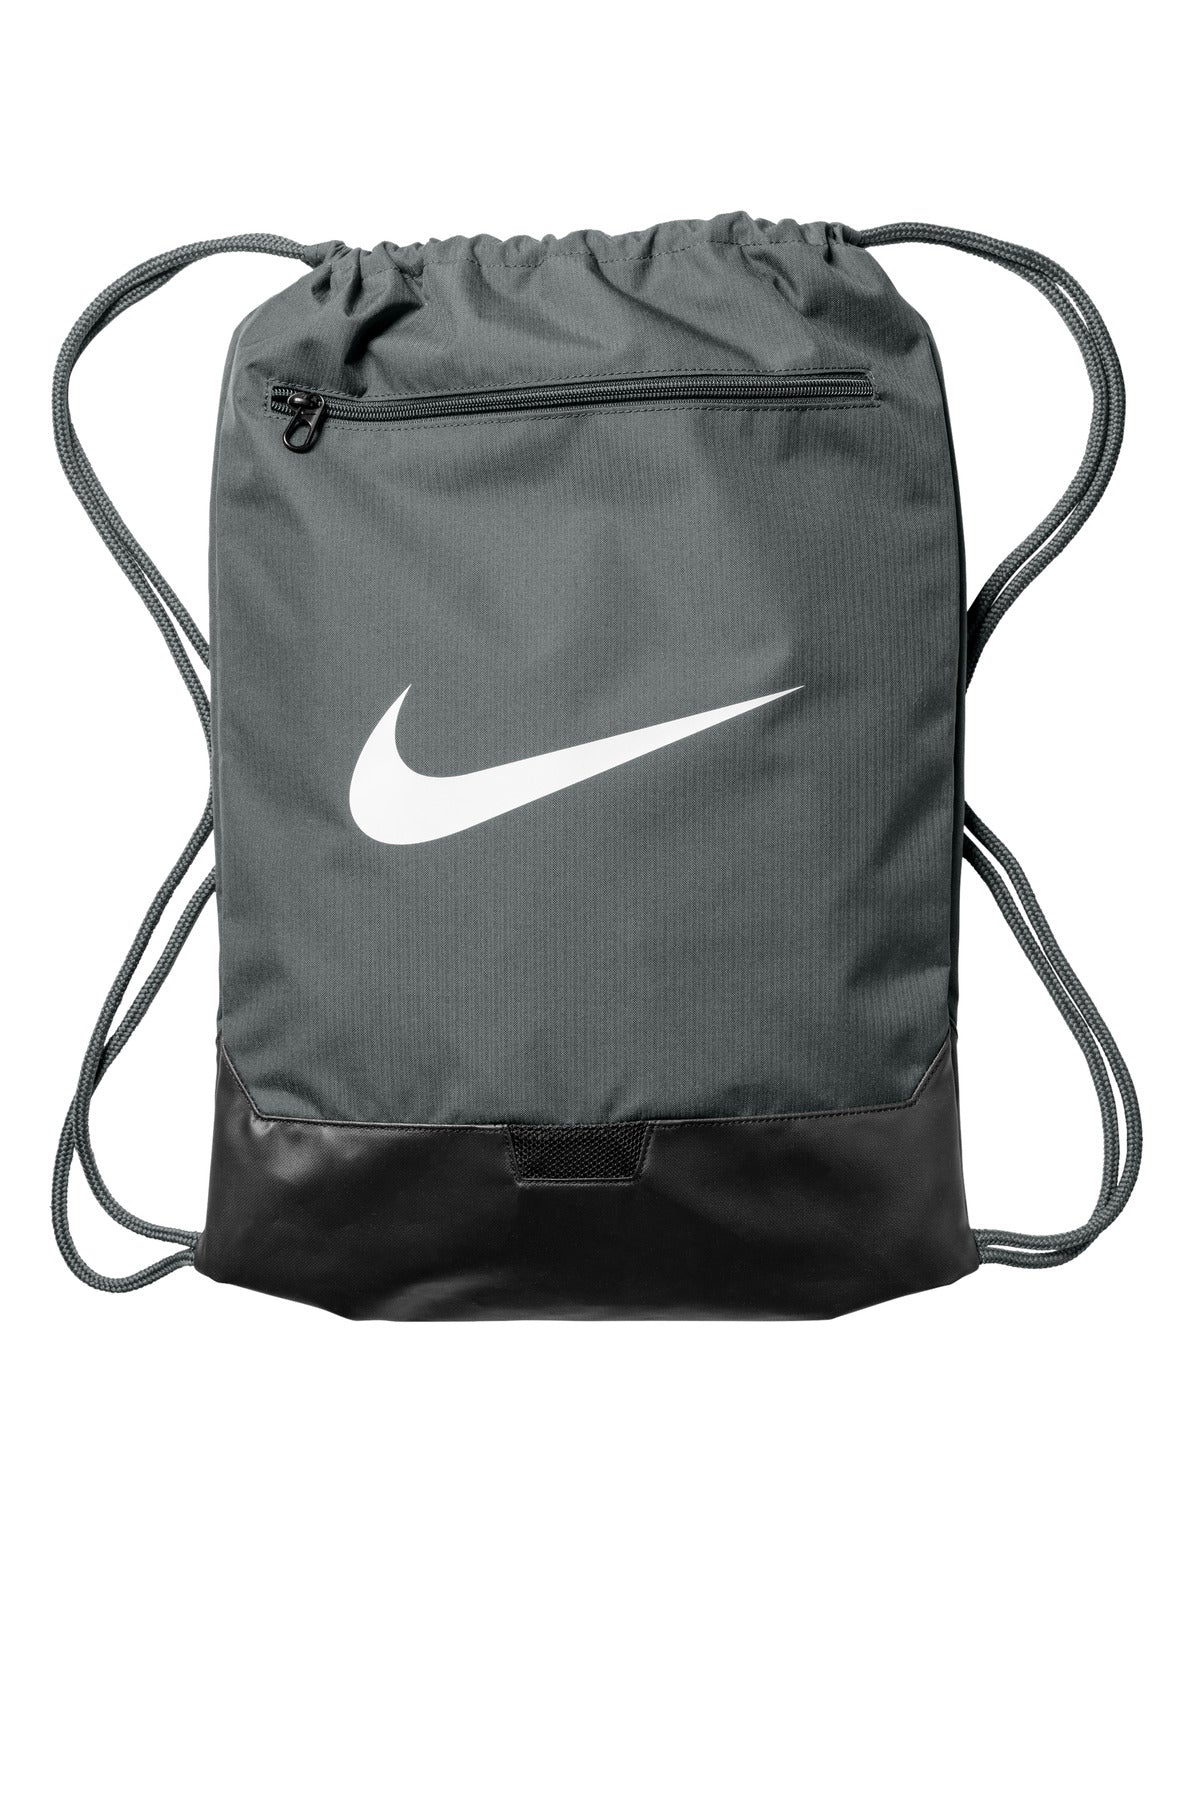 Nike Brasilia Pack NKDM3978